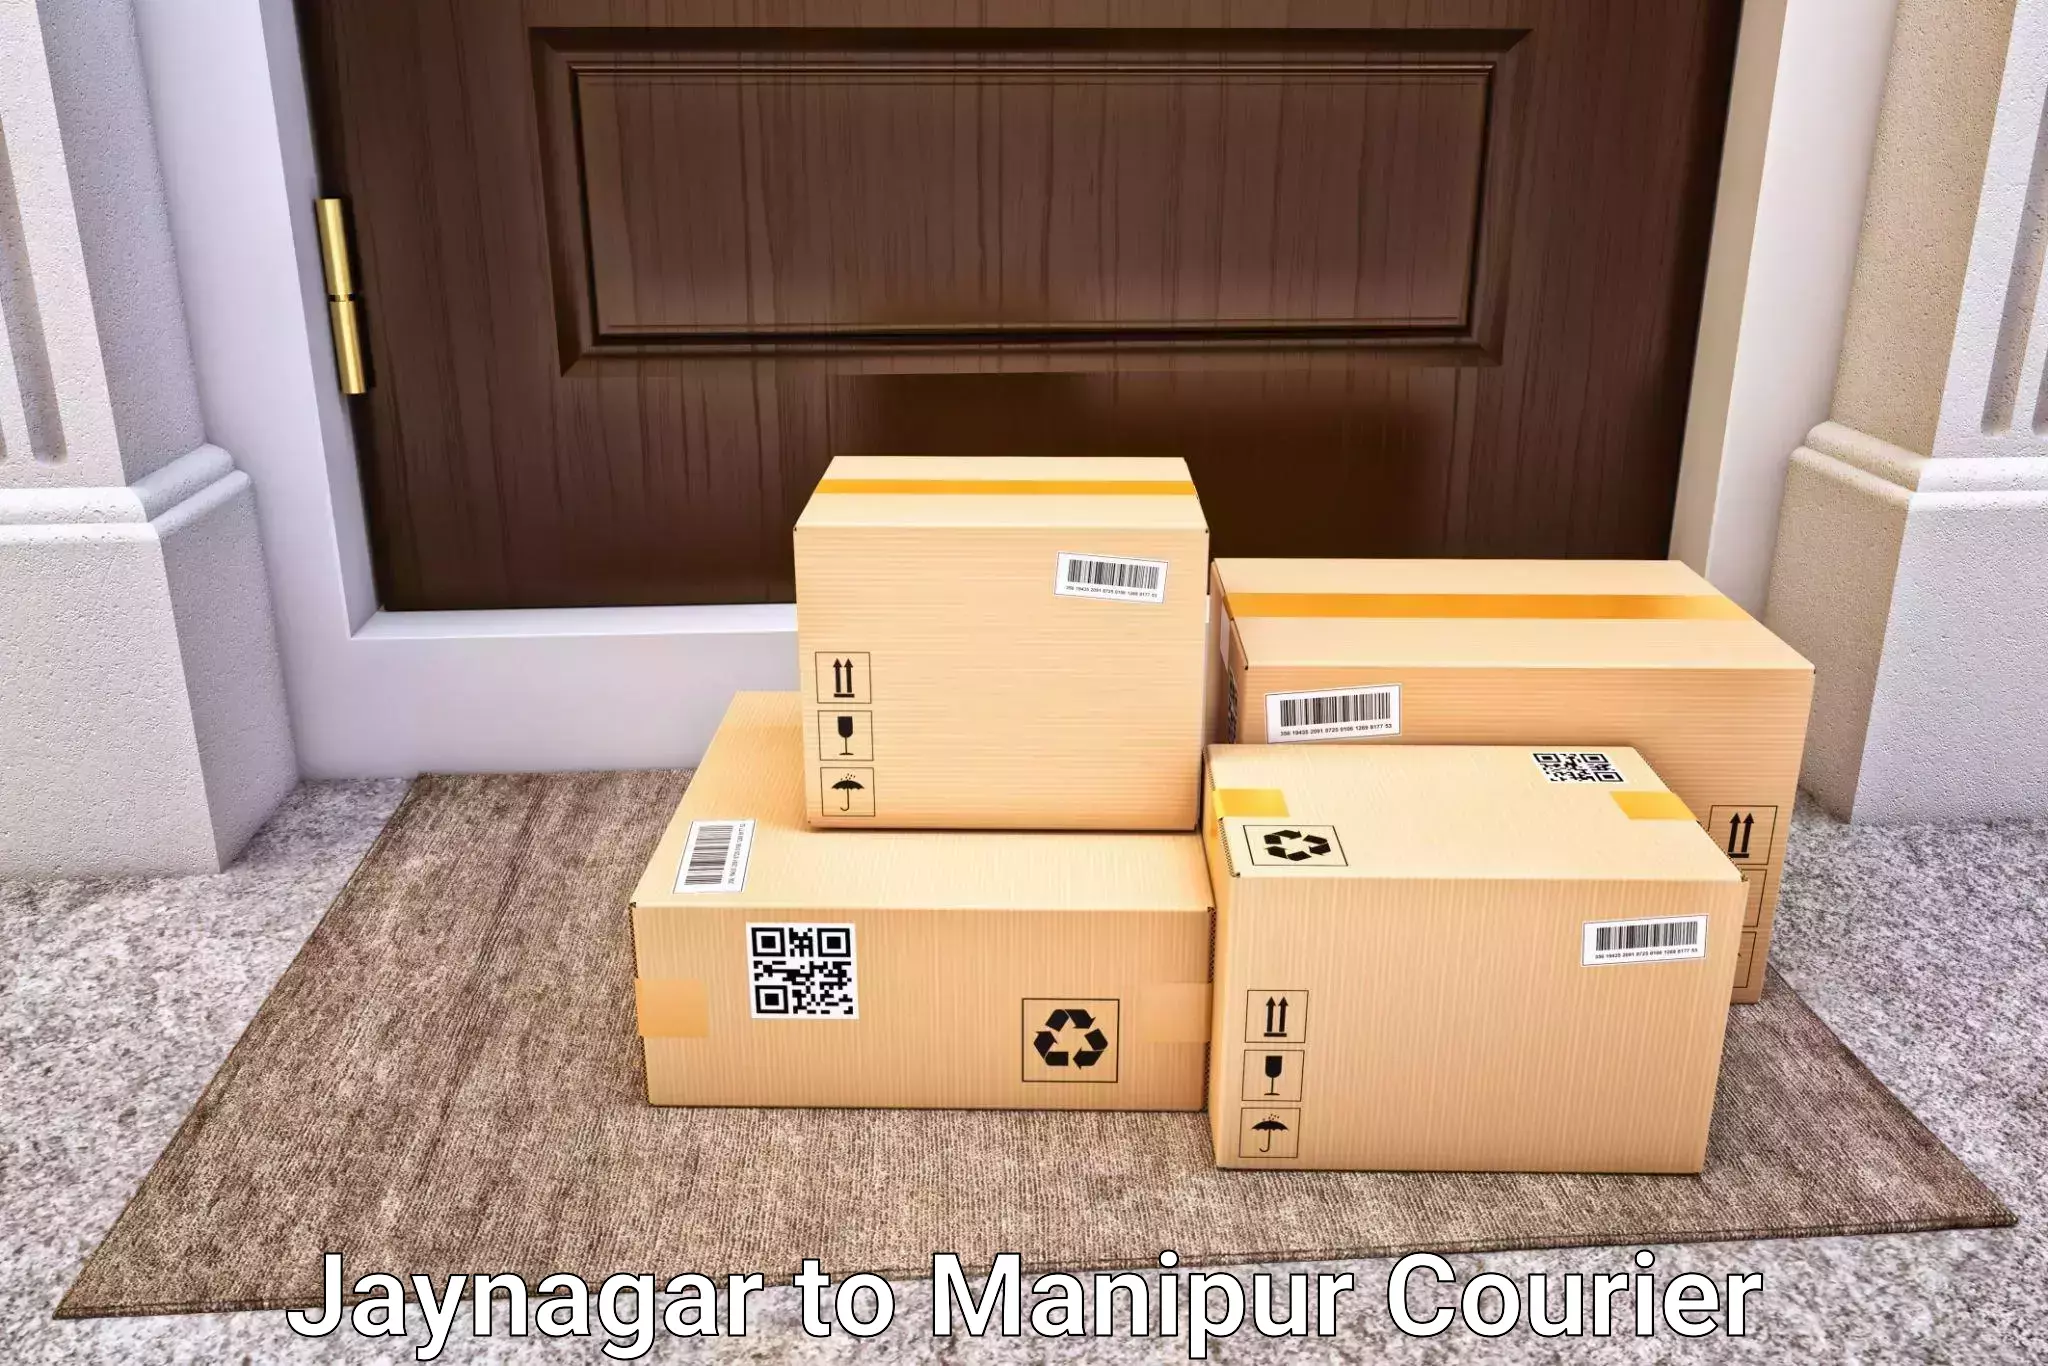 Baggage transport technology Jaynagar to Kanti